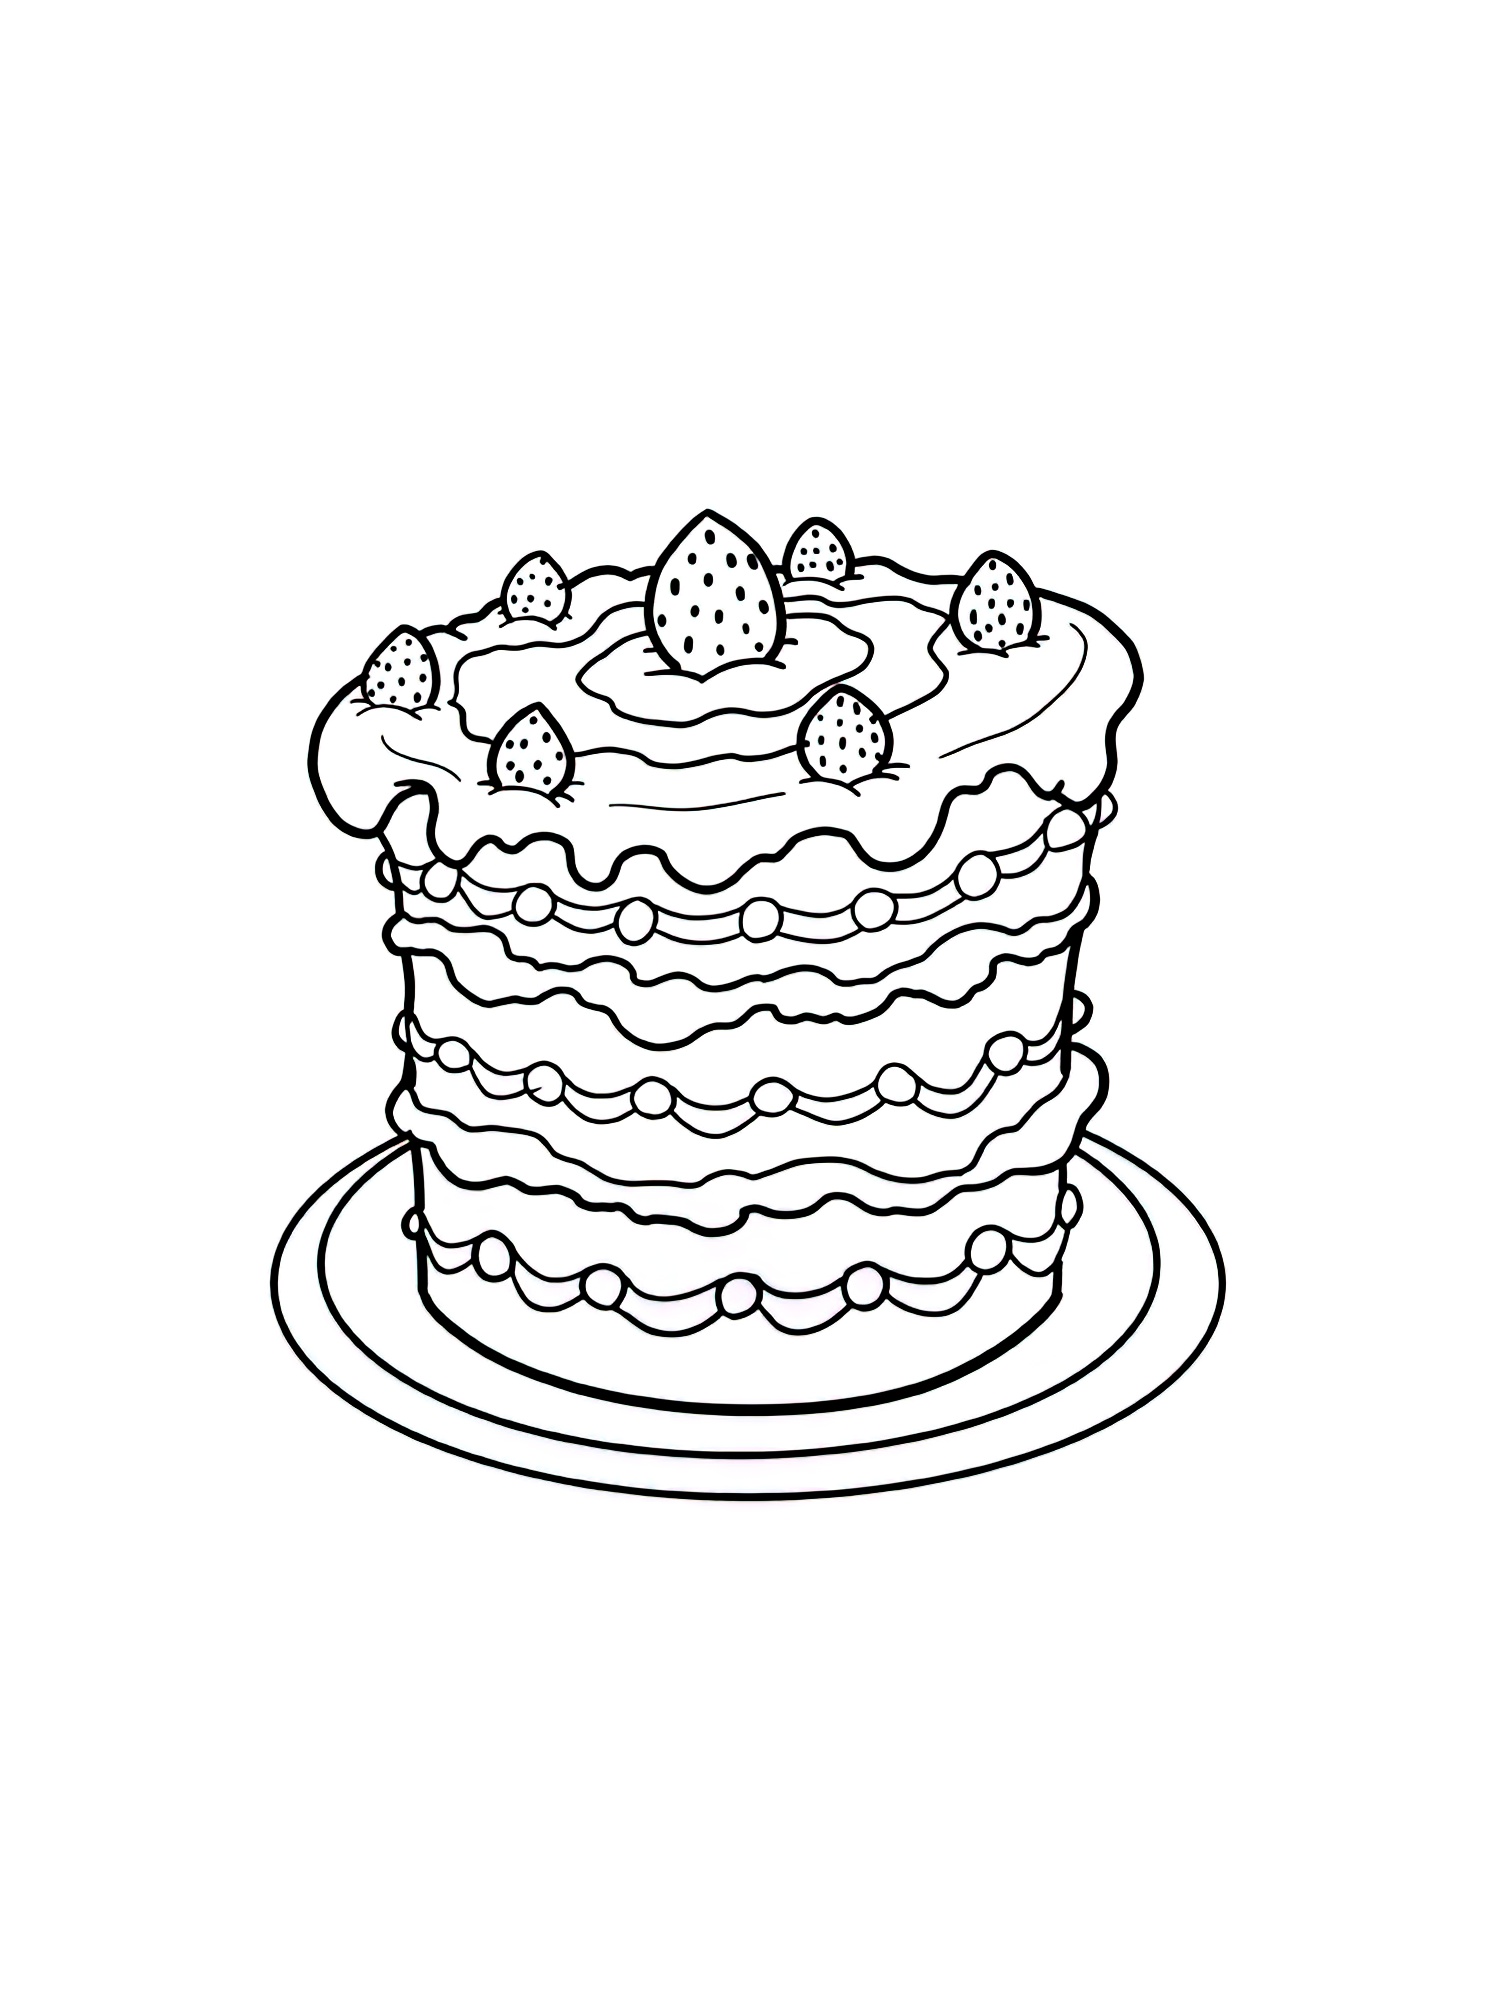 דף צביעה עוגה עם פירות יער